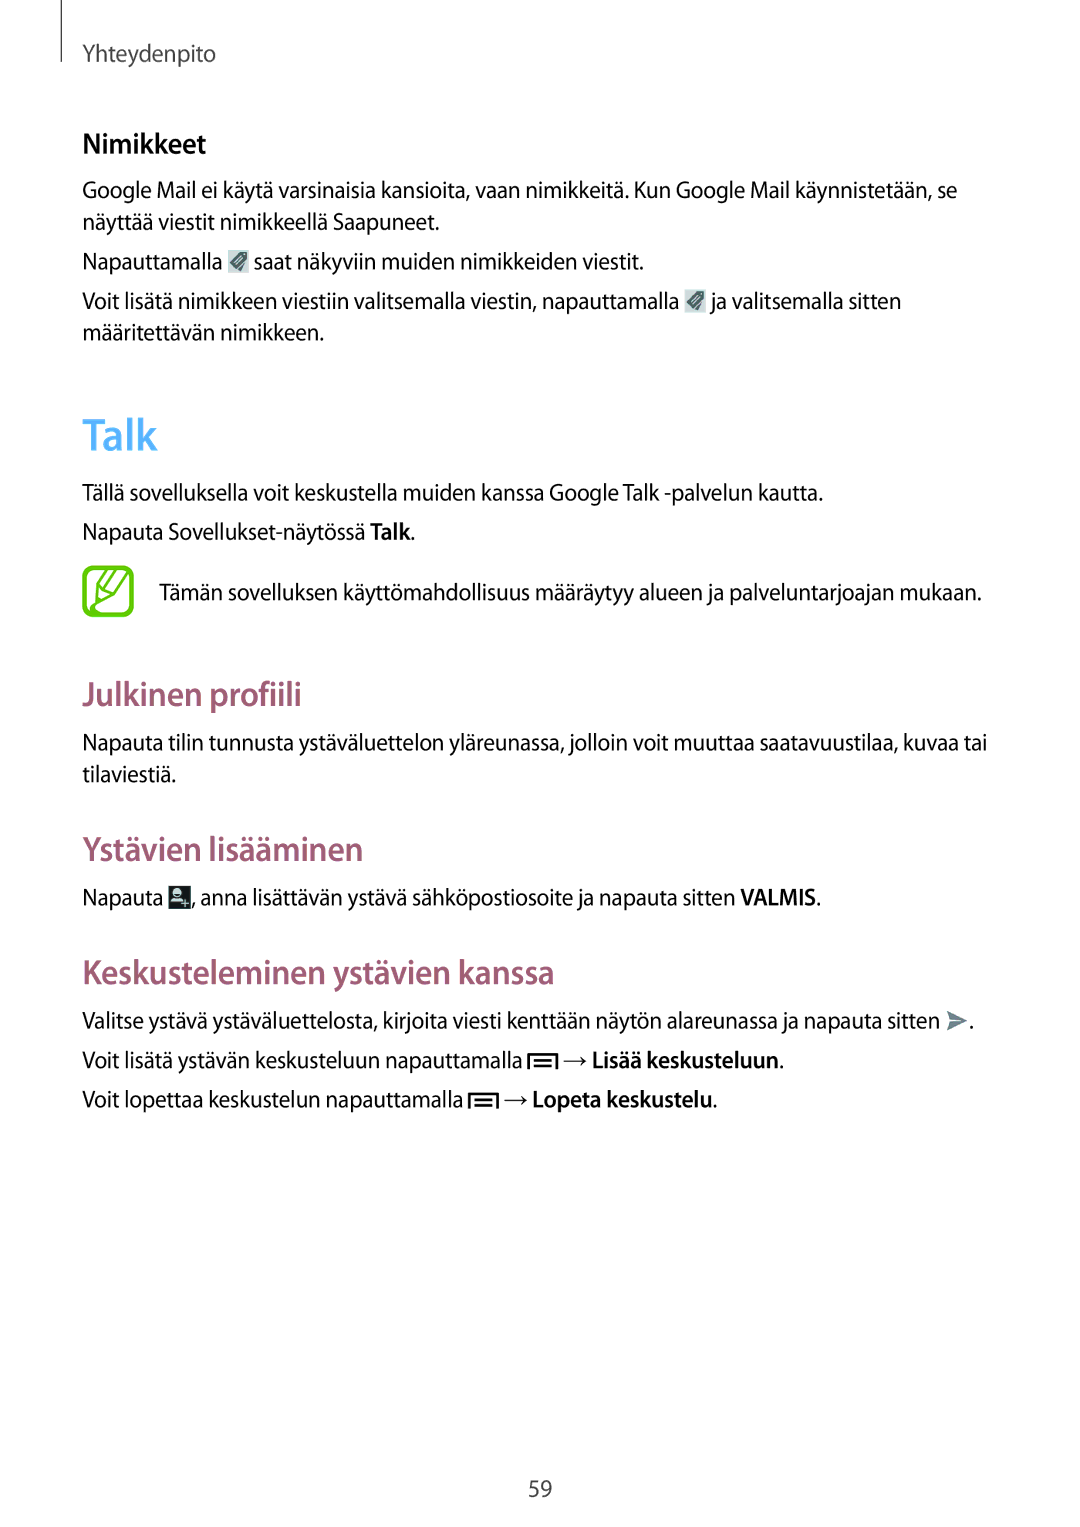 Samsung GT-I9205PPANEE manual Talk, Julkinen profiili, Ystävien lisääminen, Keskusteleminen ystävien kanssa, Nimikkeet 